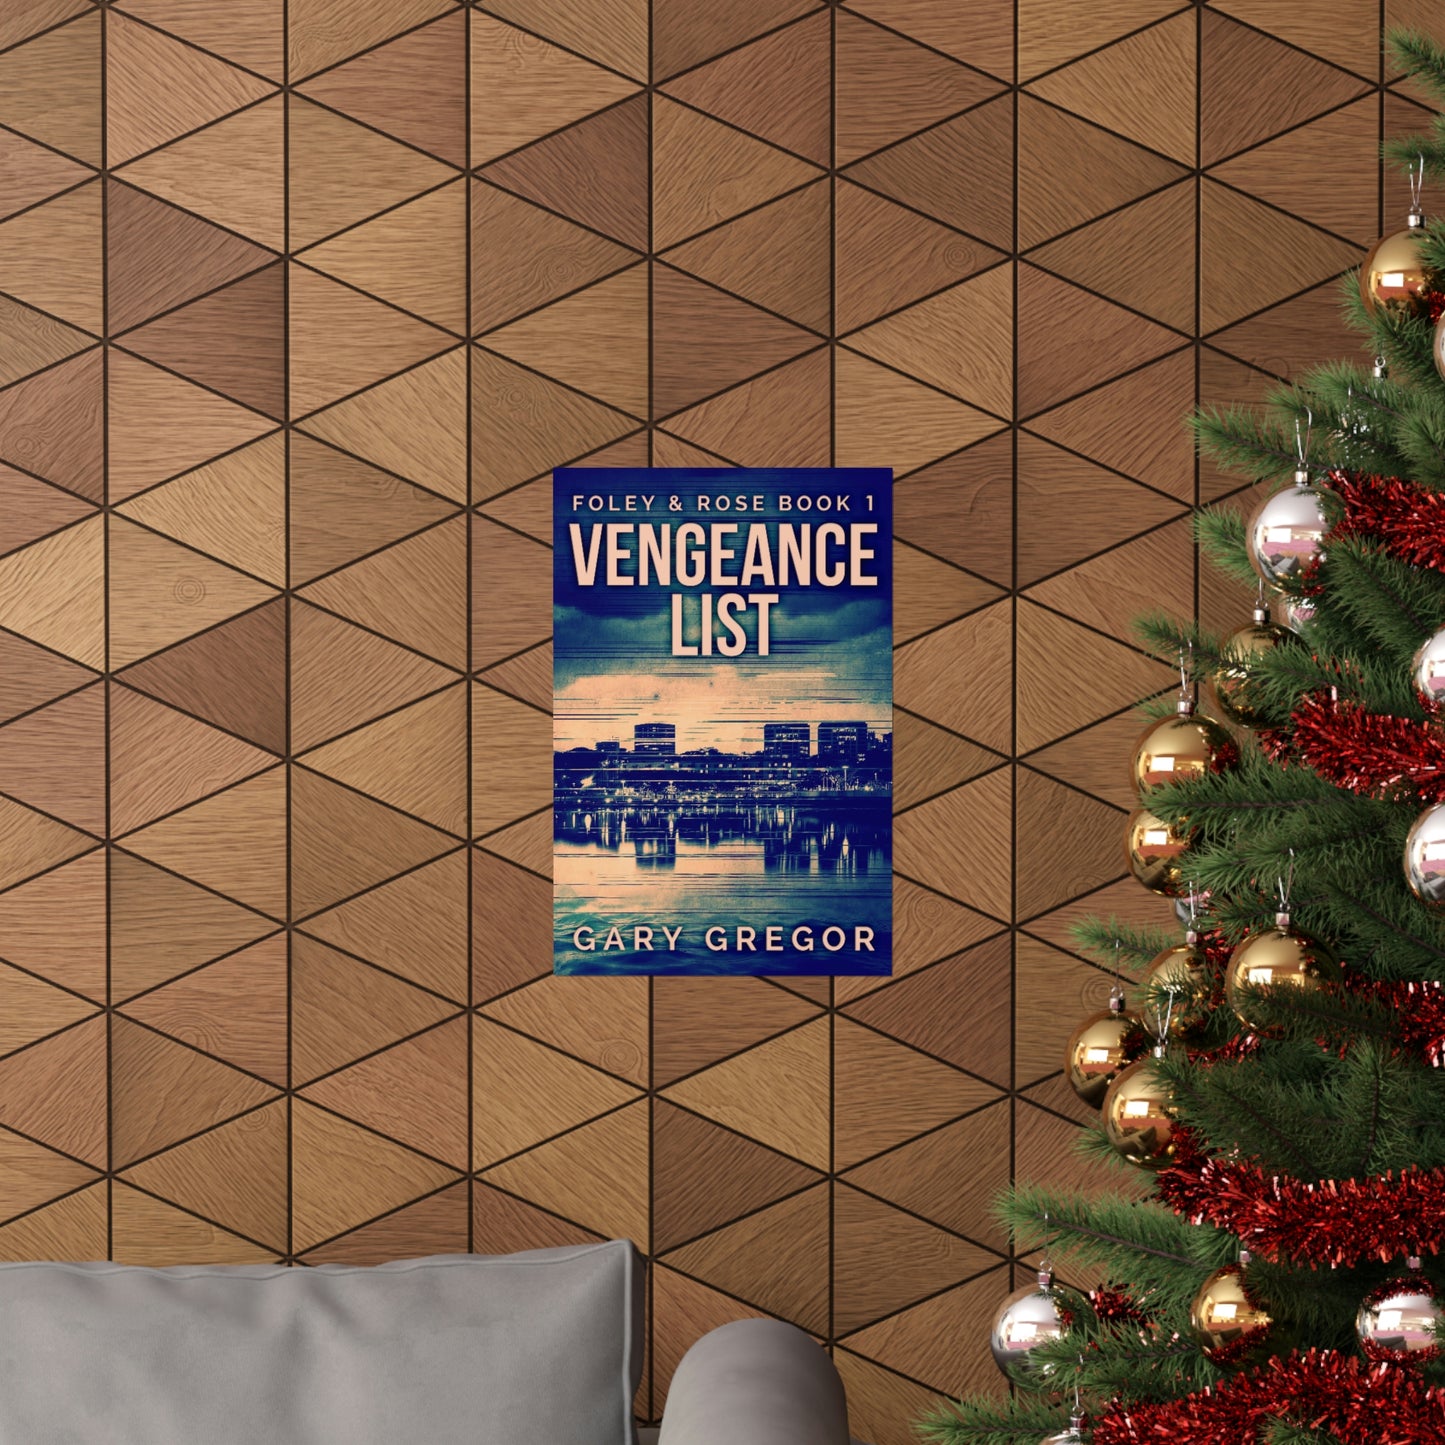 Vengeance List - Matte Poster